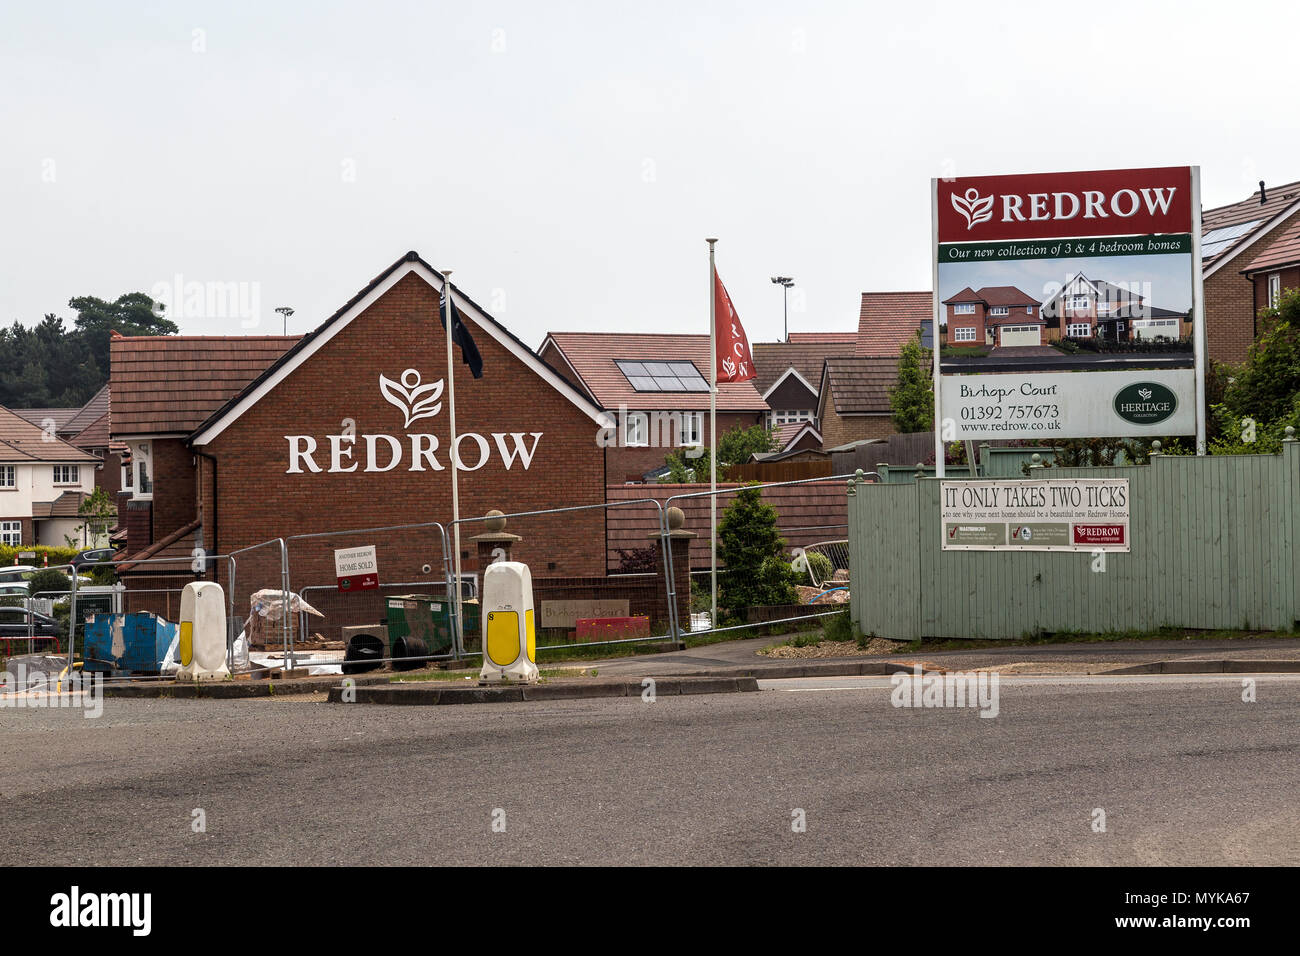 Per il Regno Unito in più rapida crescita house builder, Regno Unito leader nel settore dell'edilizia residenziale sviluppatori, fiorenti comunità, costruire responsabilmente,Redrow West Country, Foto Stock